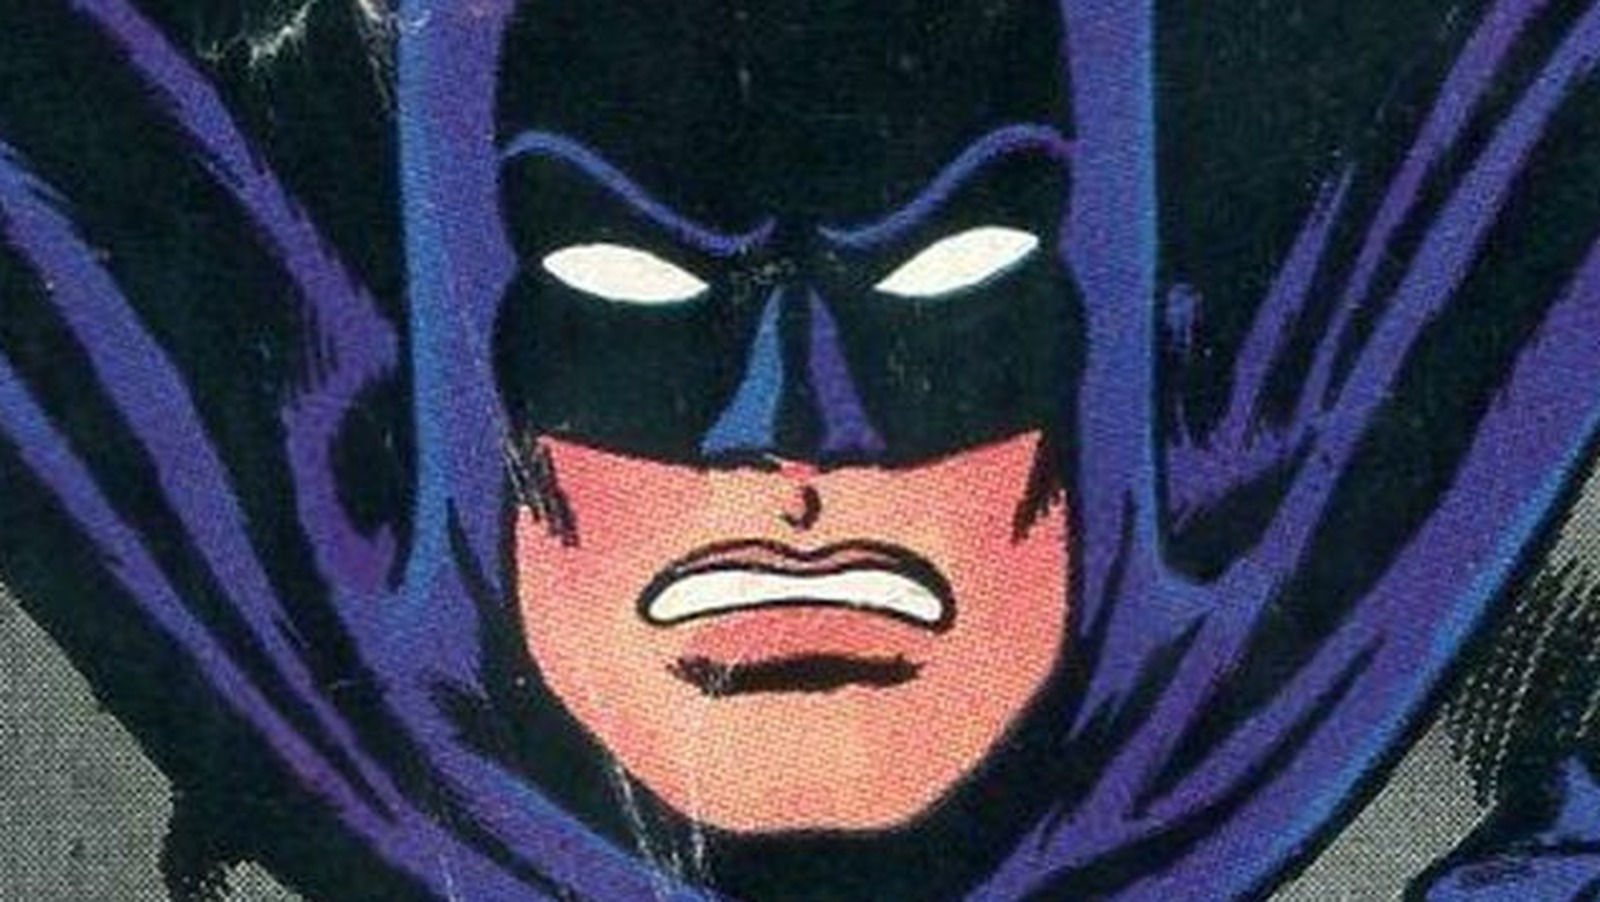 The Weirdest Batman Comic Book Stories Of All Time